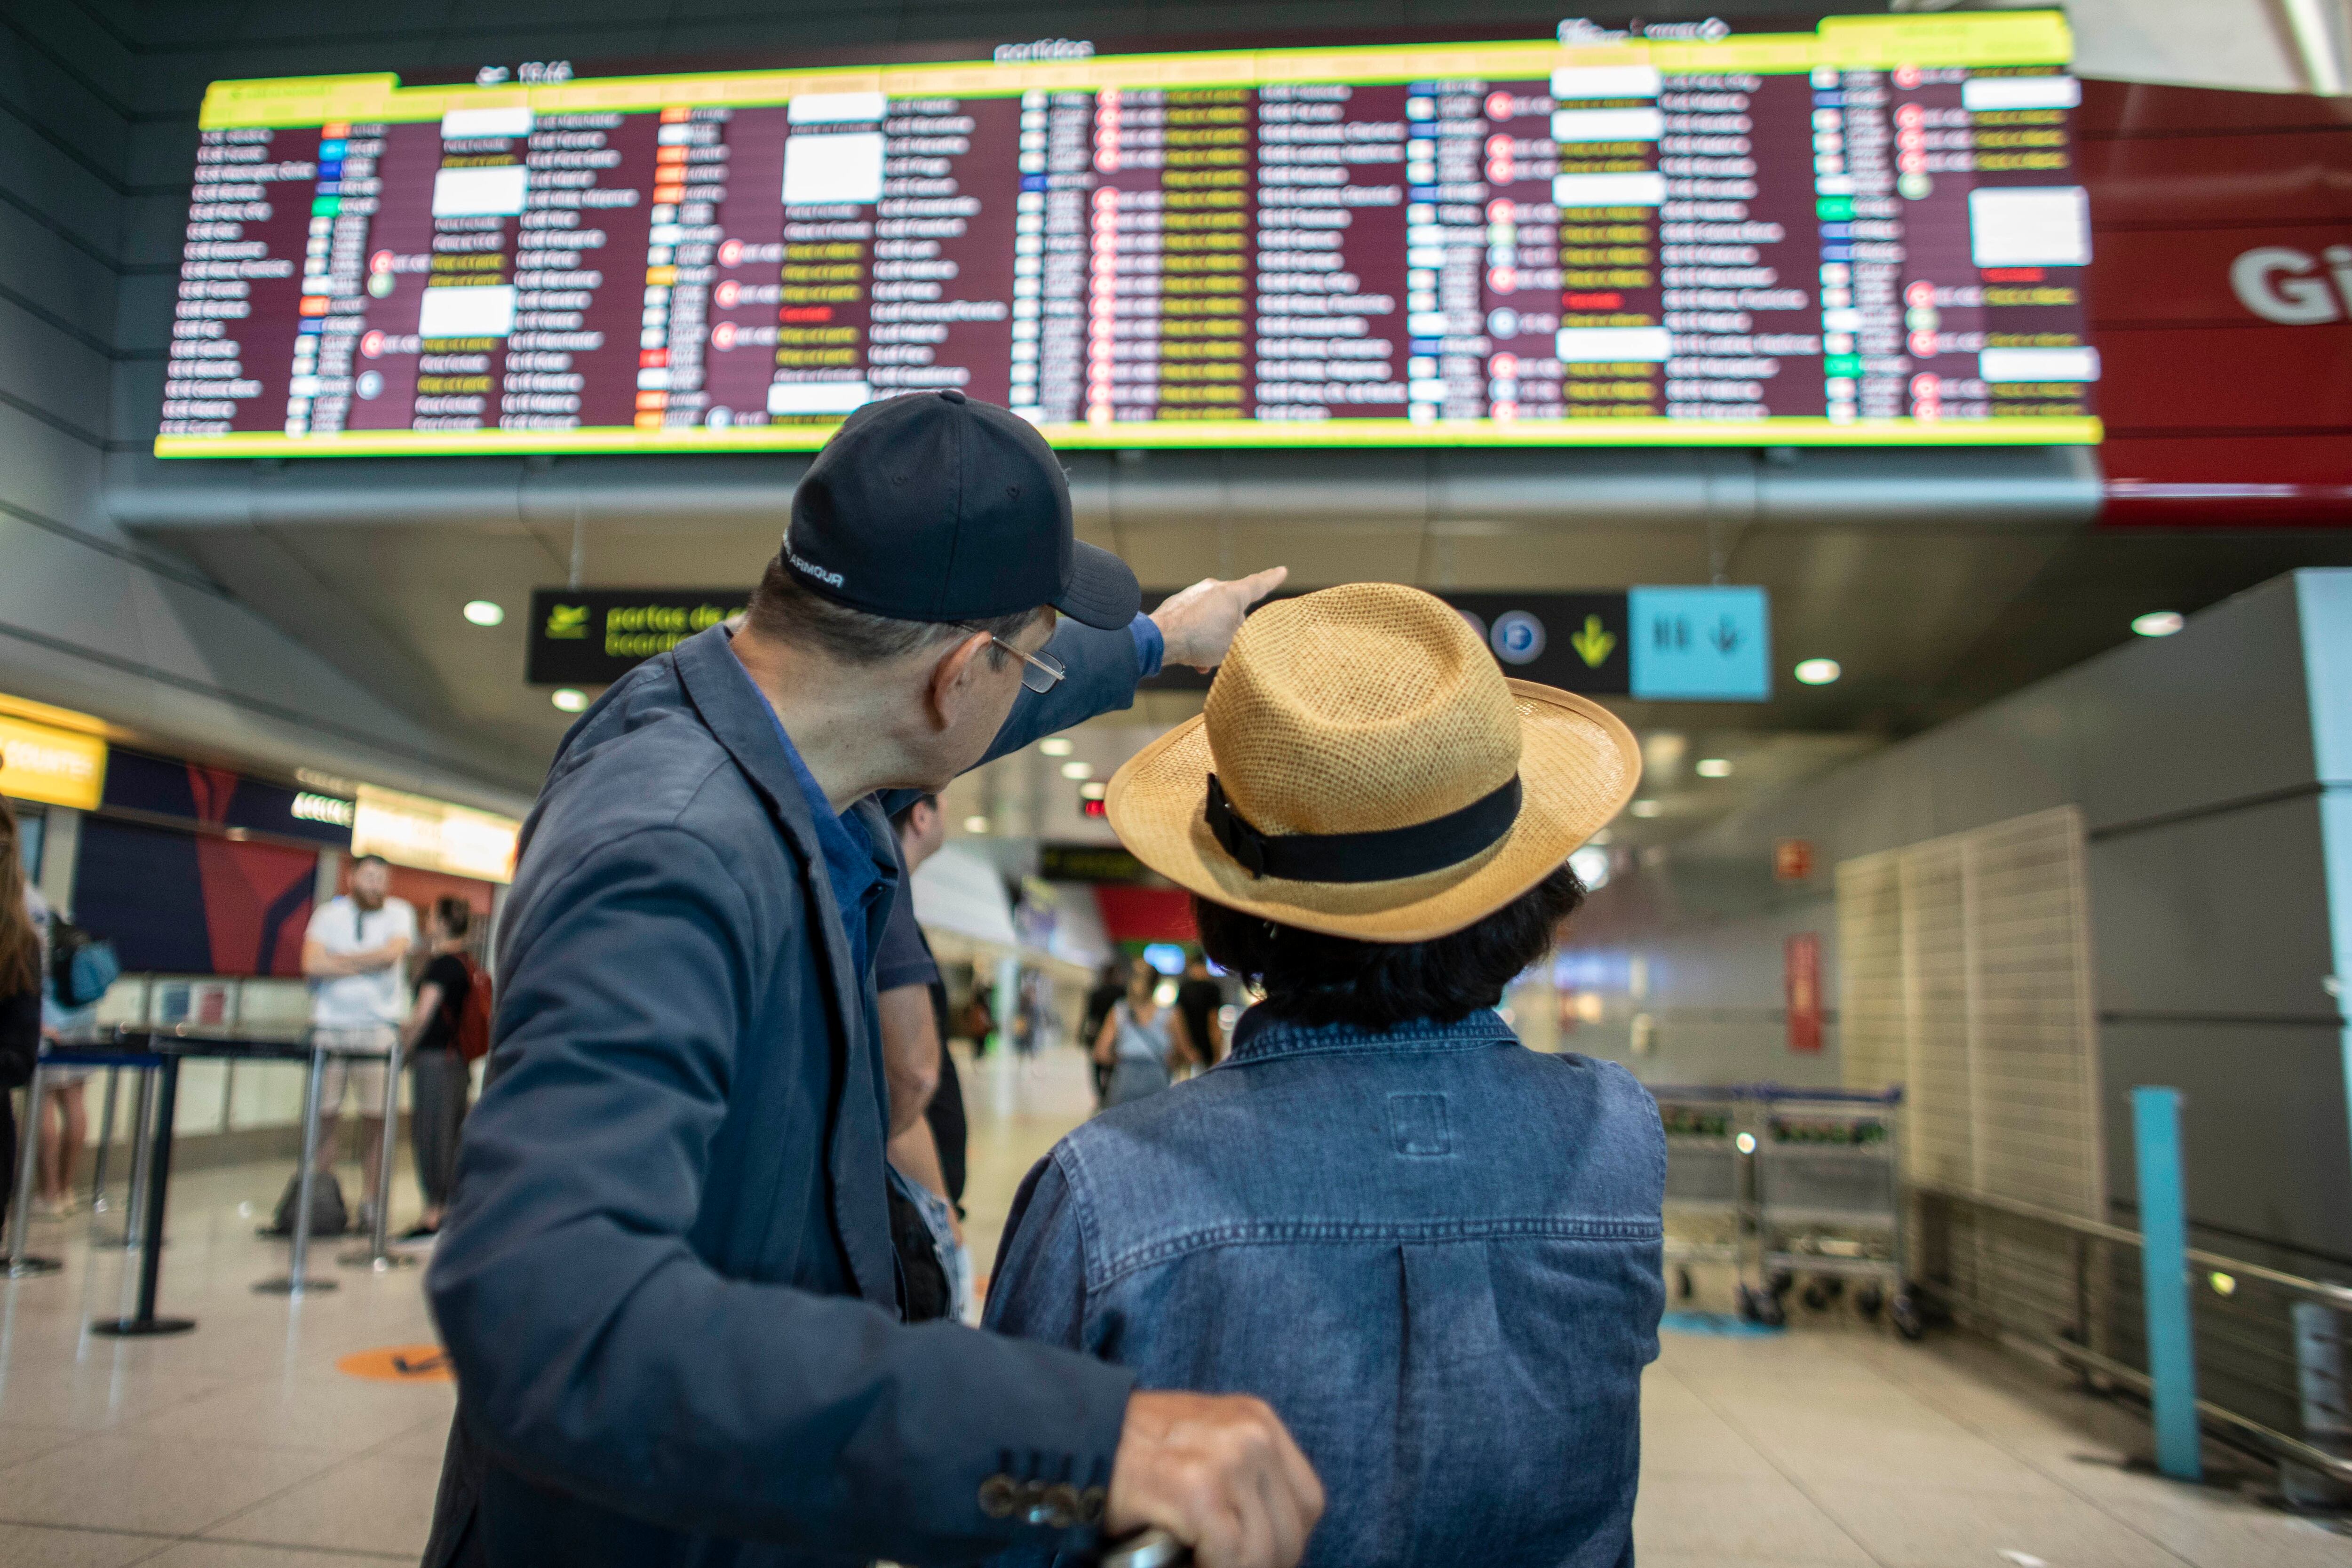 Dos turistas observaban el panel de información de vuelos en el aeropuerto de Lisboa, el pasado 3 julio.